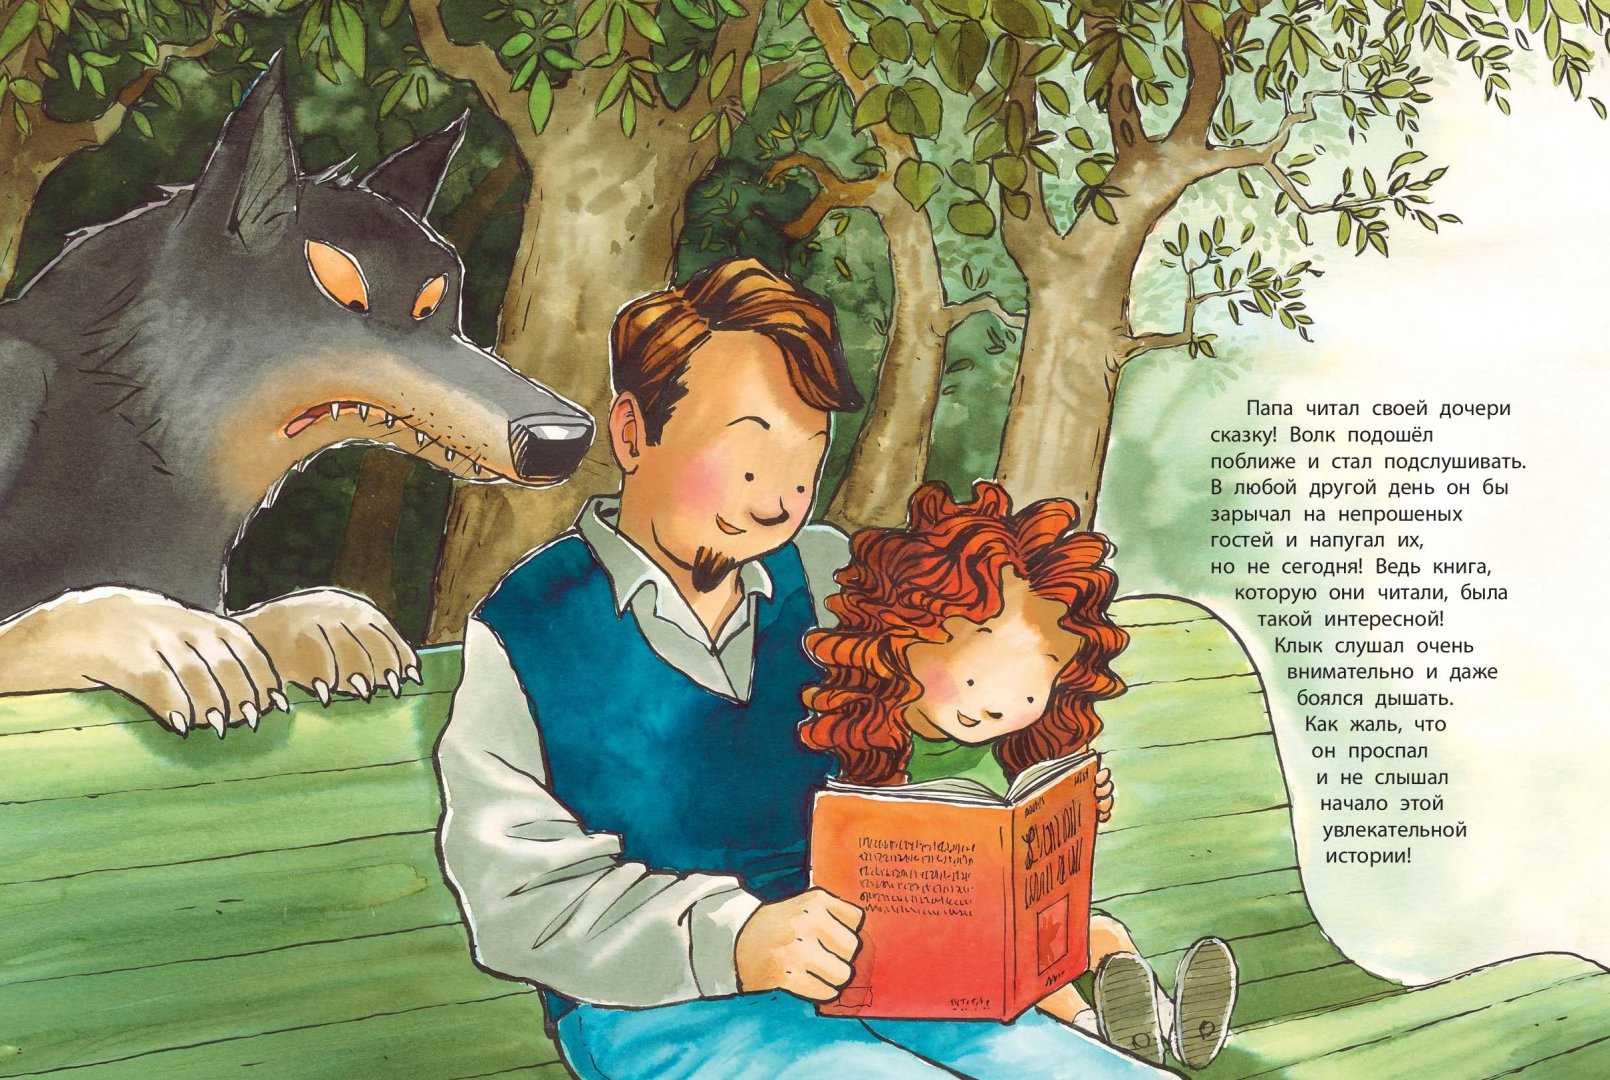 Читать сказки внутри. Иллюстрация к детской книге. Детские унигииллюстрации. BKK.cnhfwbb d RYBF[.